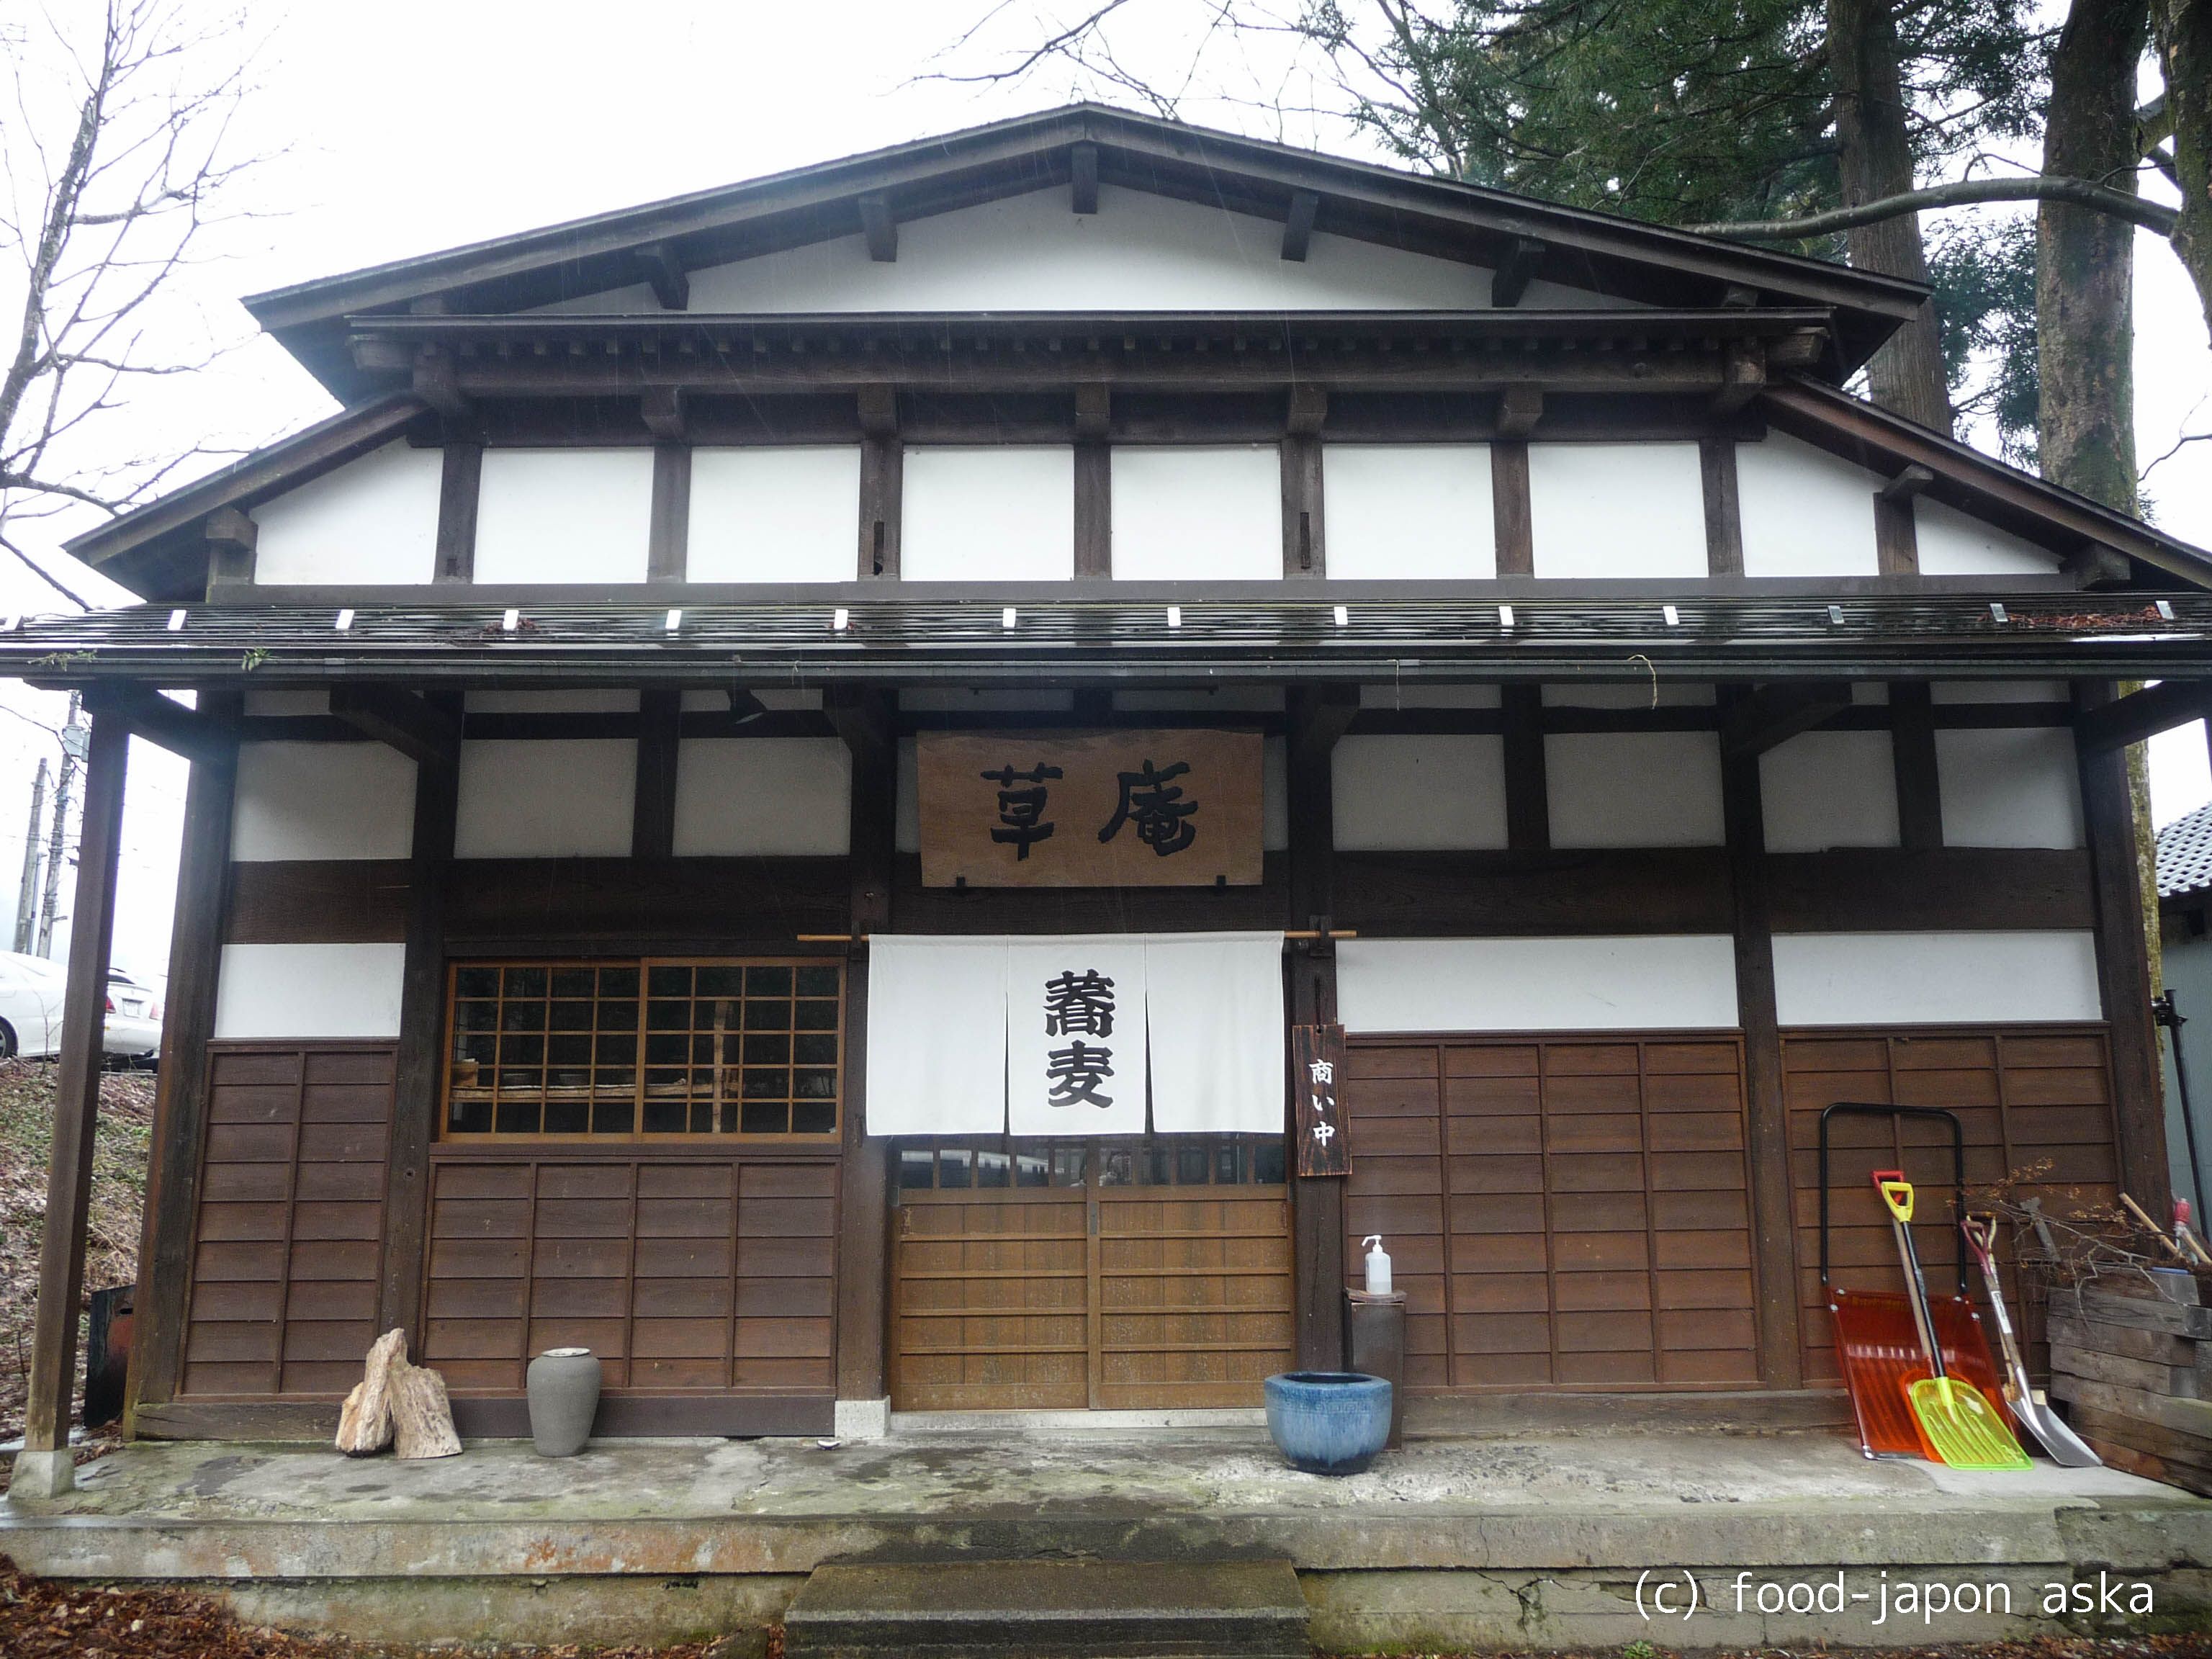 「草庵」白山比め神社近隣の人気そば店。凛とした趣あるお屋敷で～蔵を改装した個室もステキです